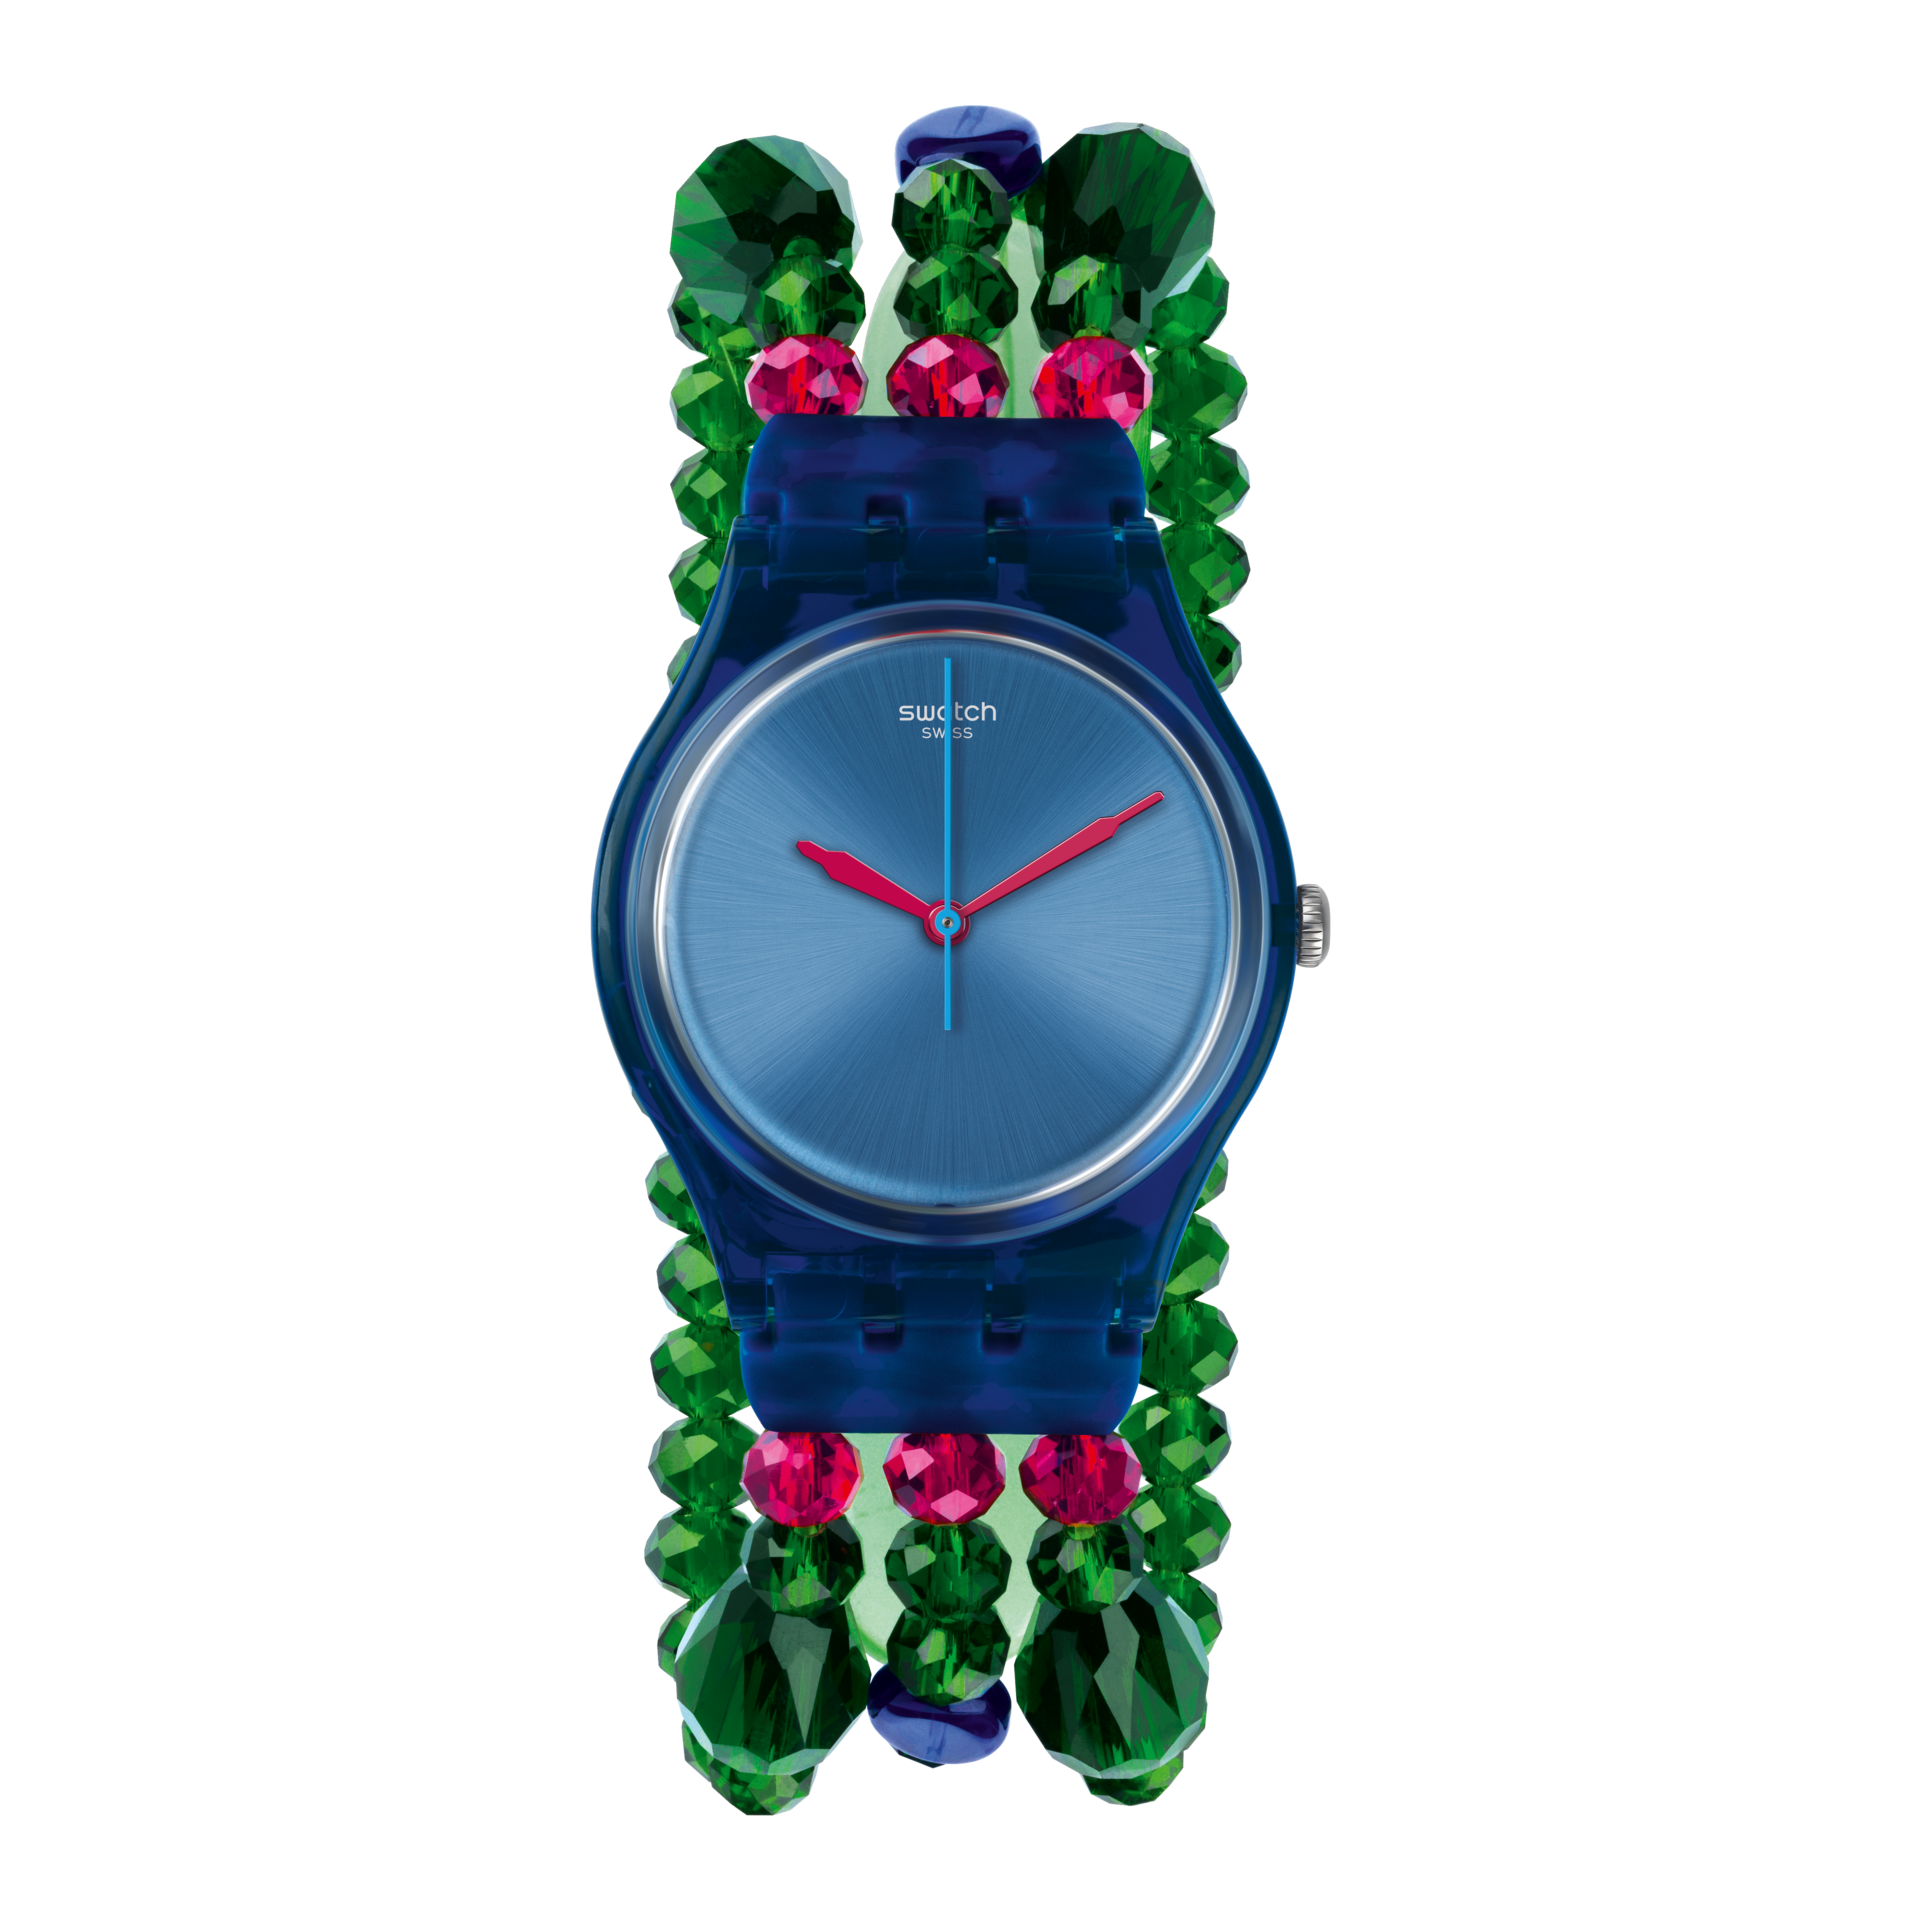 Products часы. Swatch часы Lady с лягушкой. Часы Swatch женские suoz148. Swatch часы браслет Бусины. Часы Swatch с зеленым камнем.